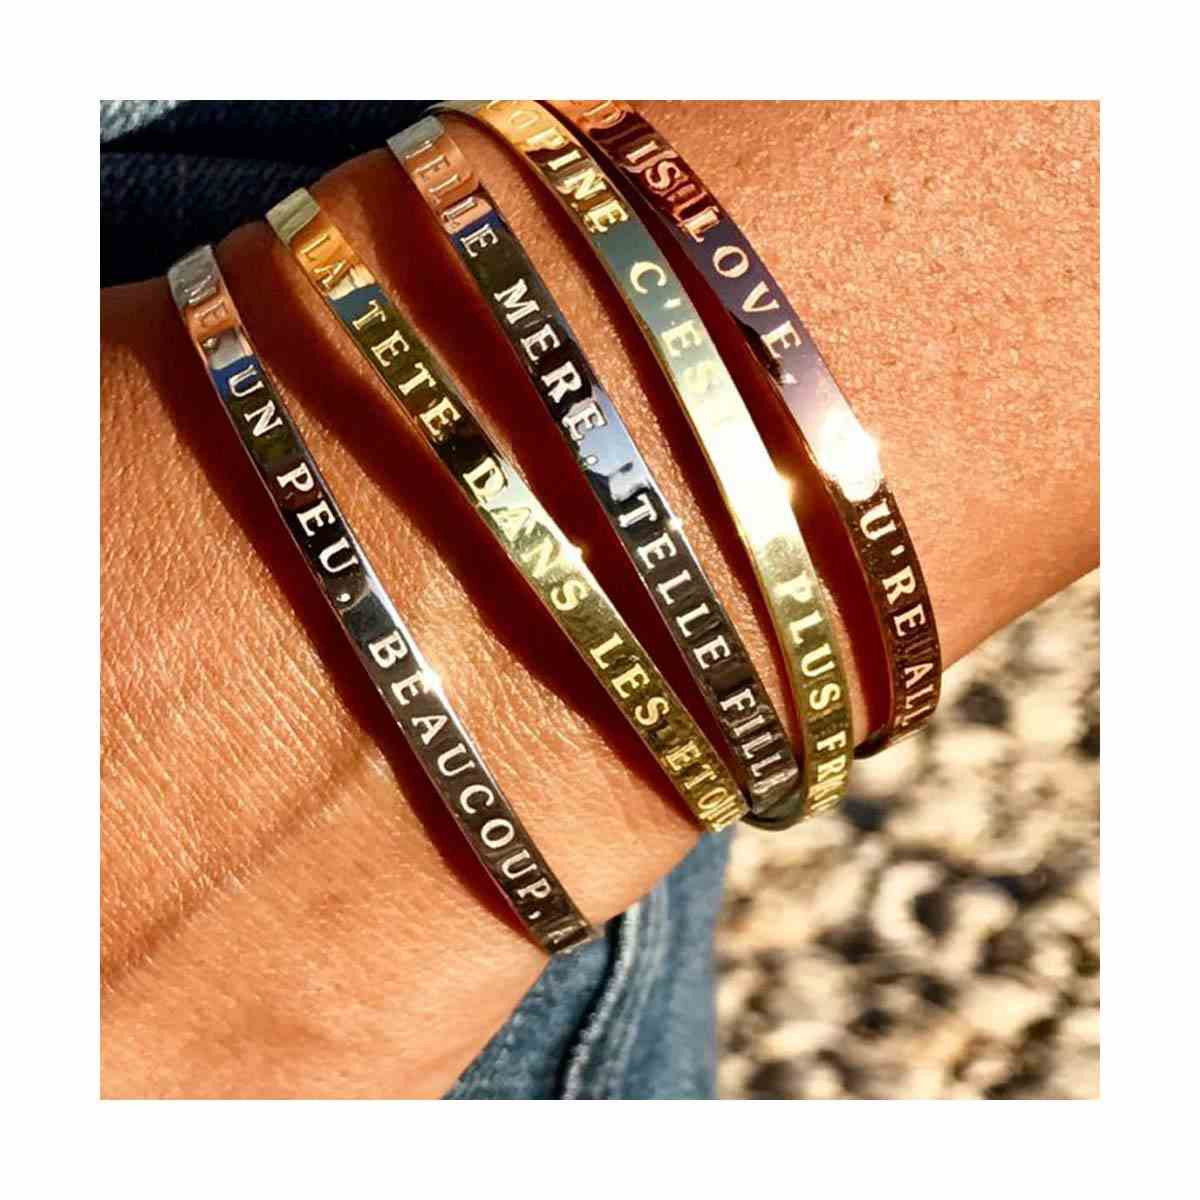 "TRUE LOVE" bracelet jonc doré à message